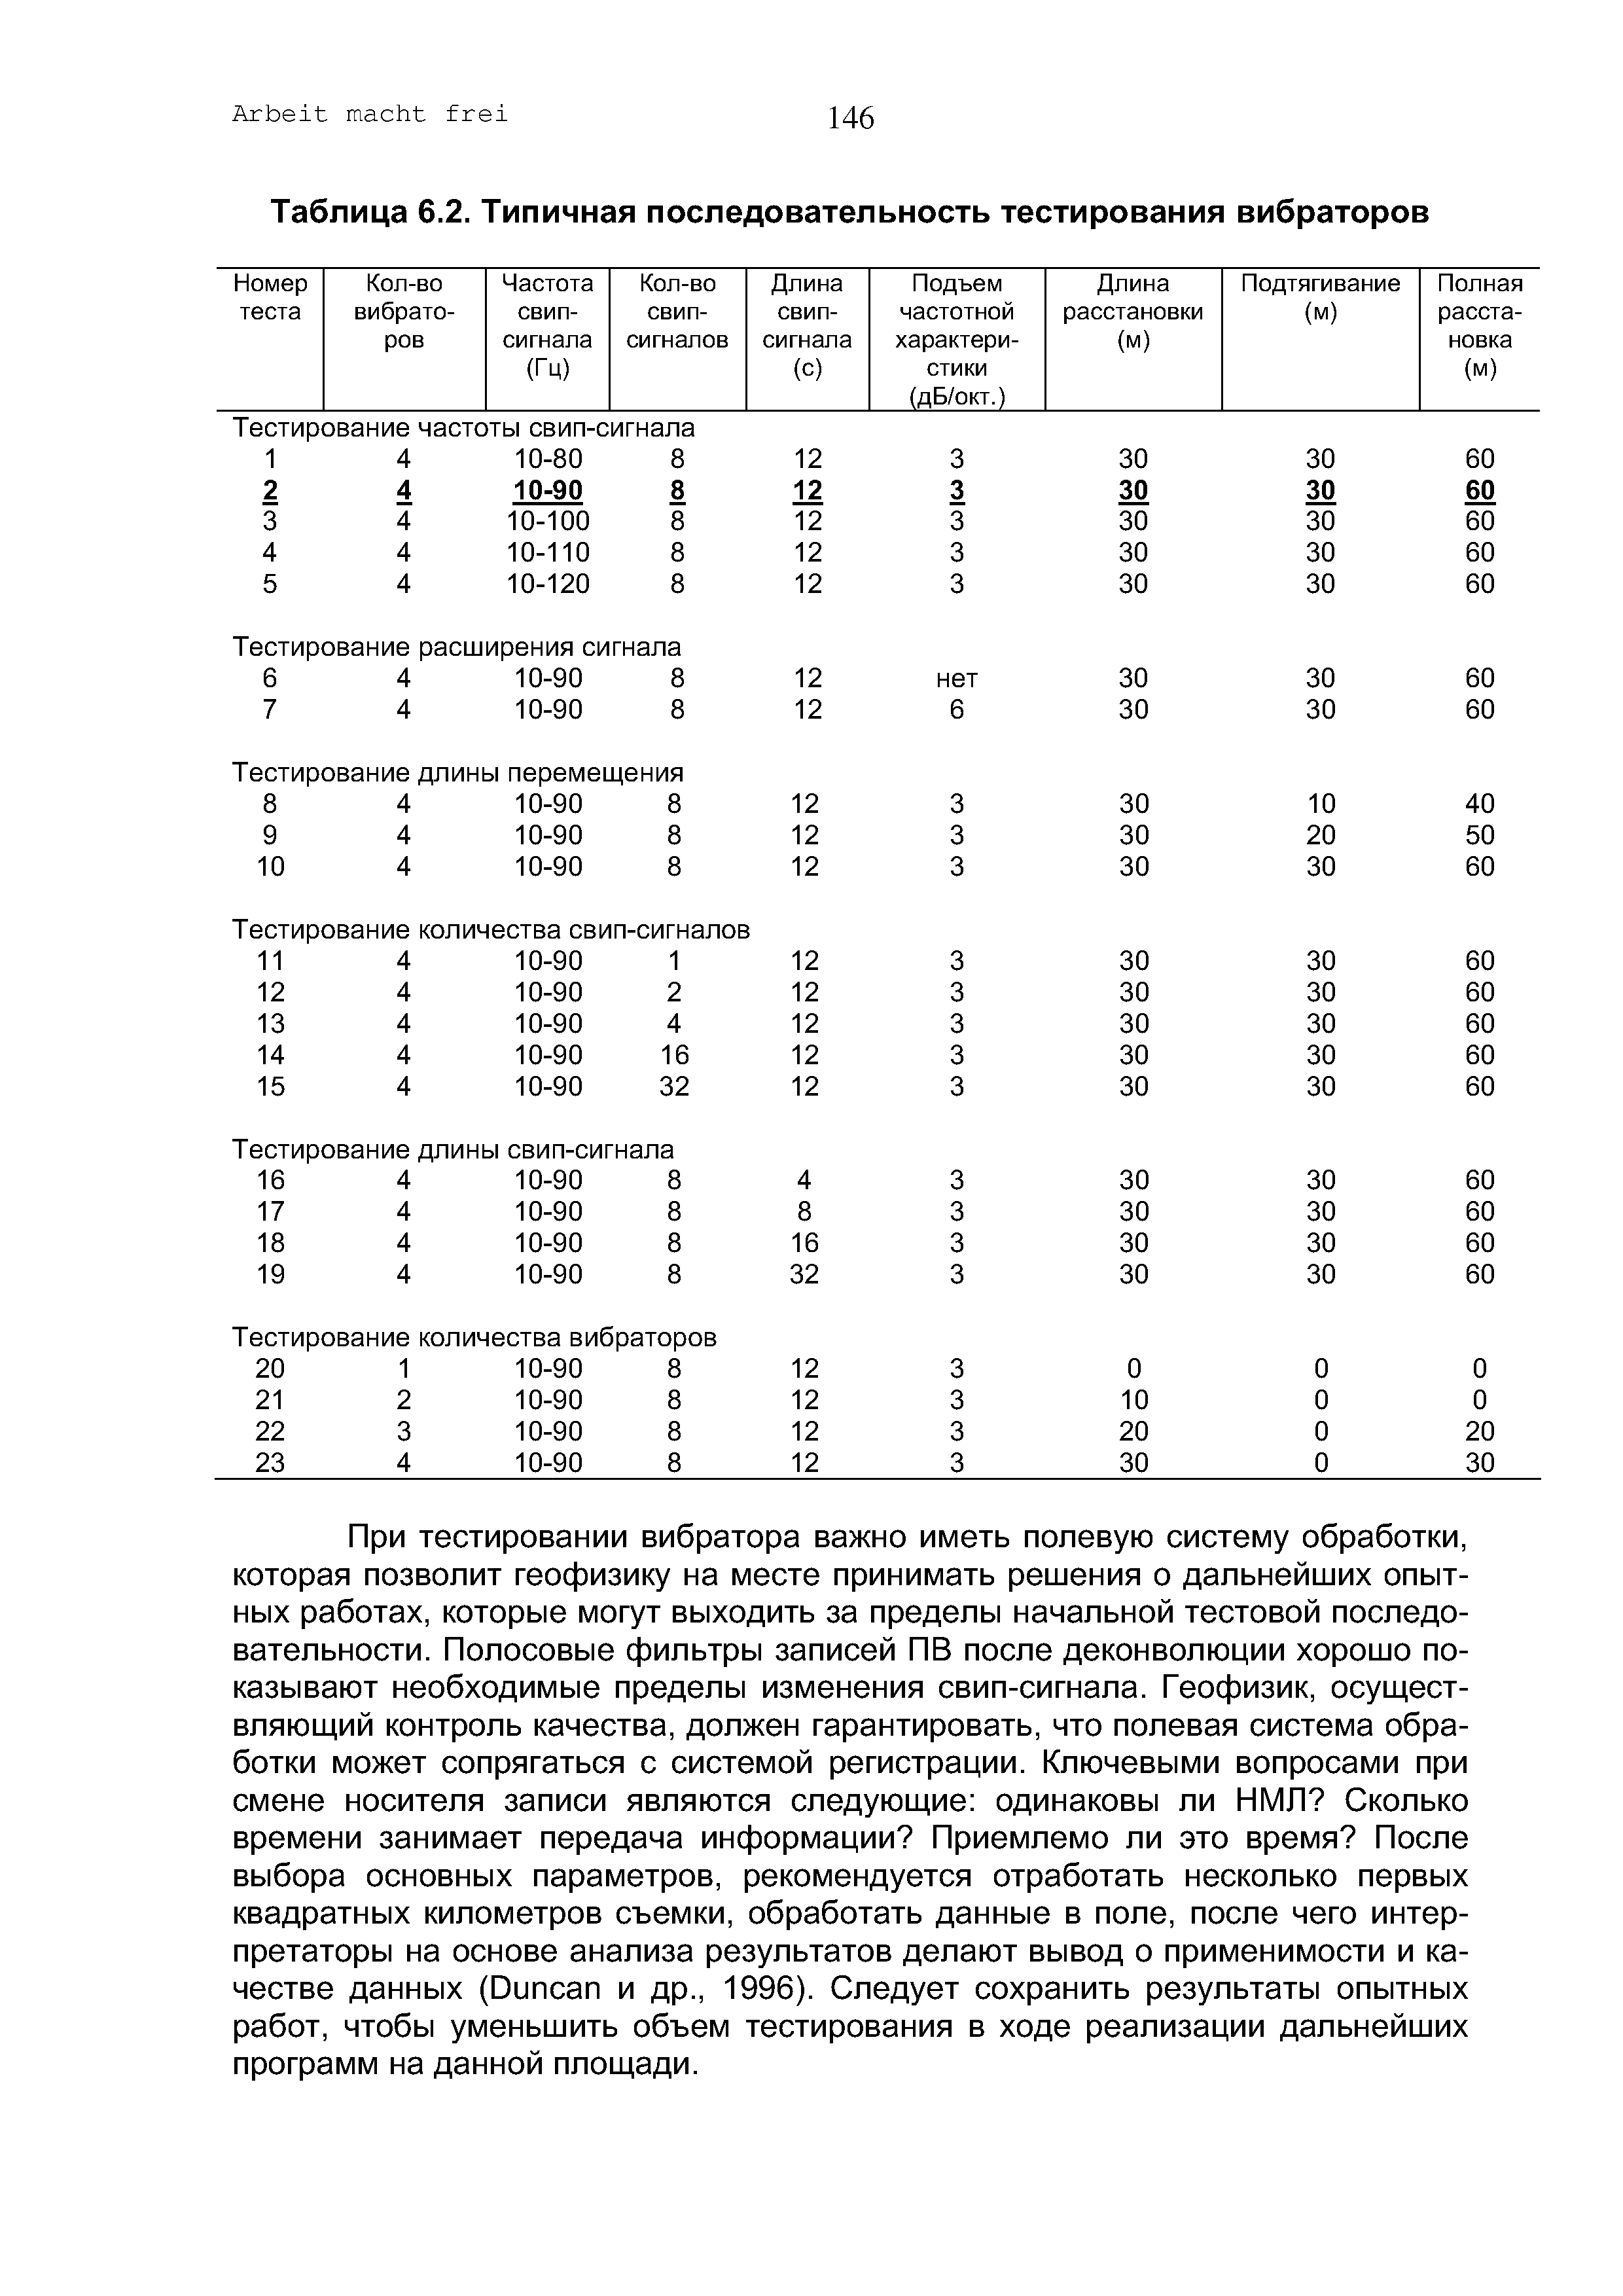 Таблица 6.2. Типичная последовательность тестирования вибраторов
